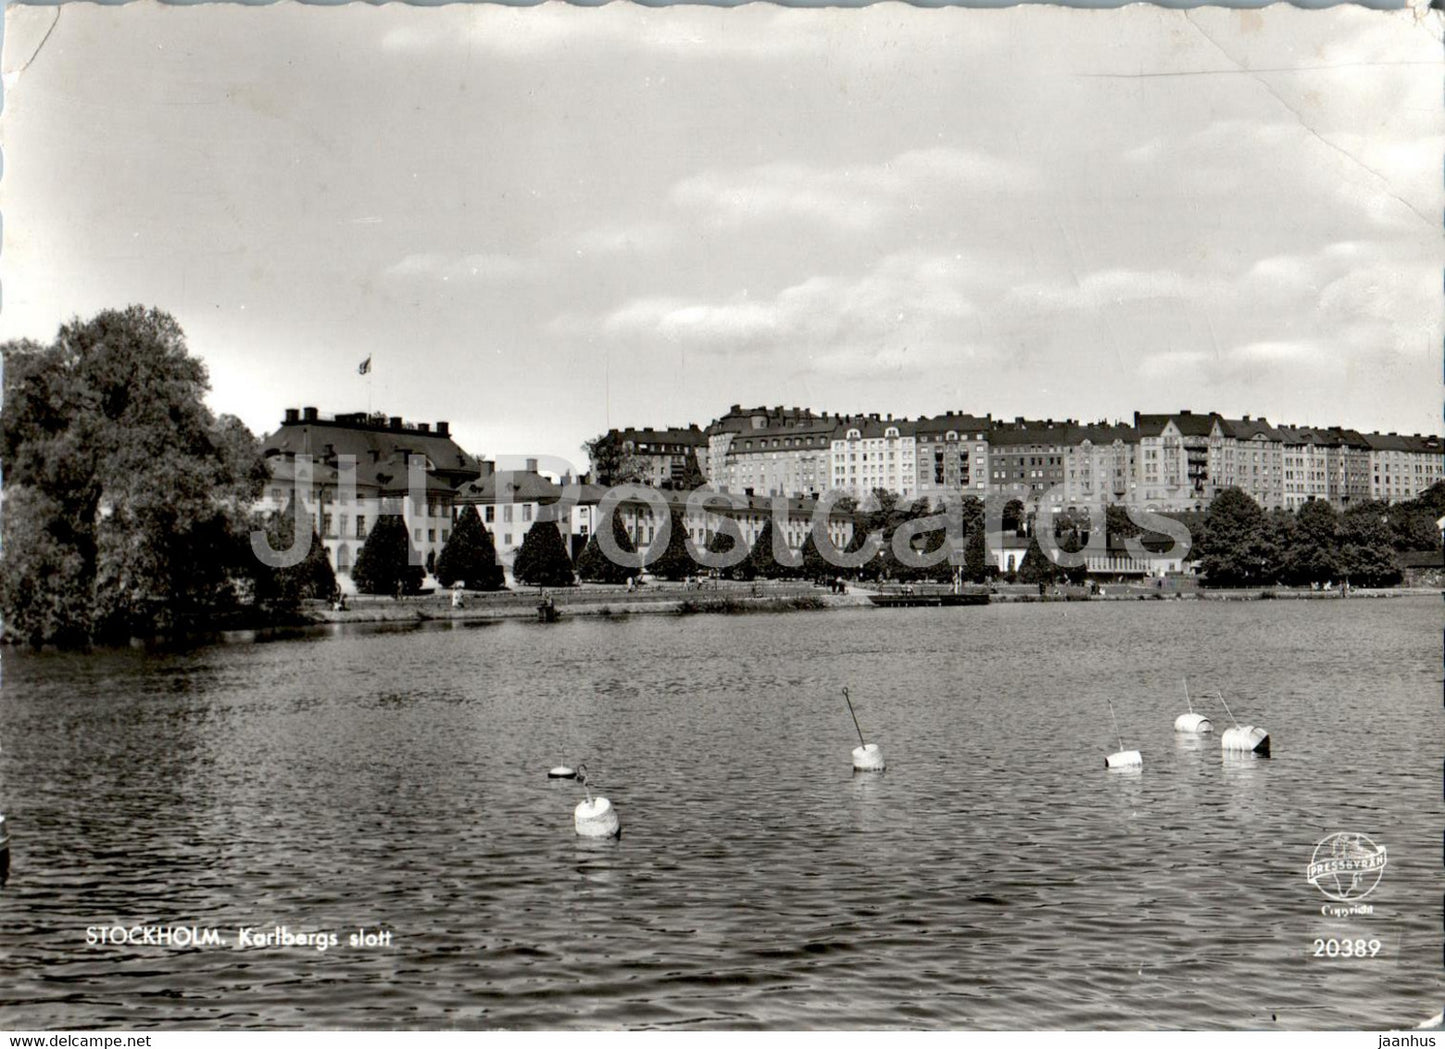 Stockholm - Karlsberg slott - castle - 20389 - 1961 - Sweden - used - JH Postcards